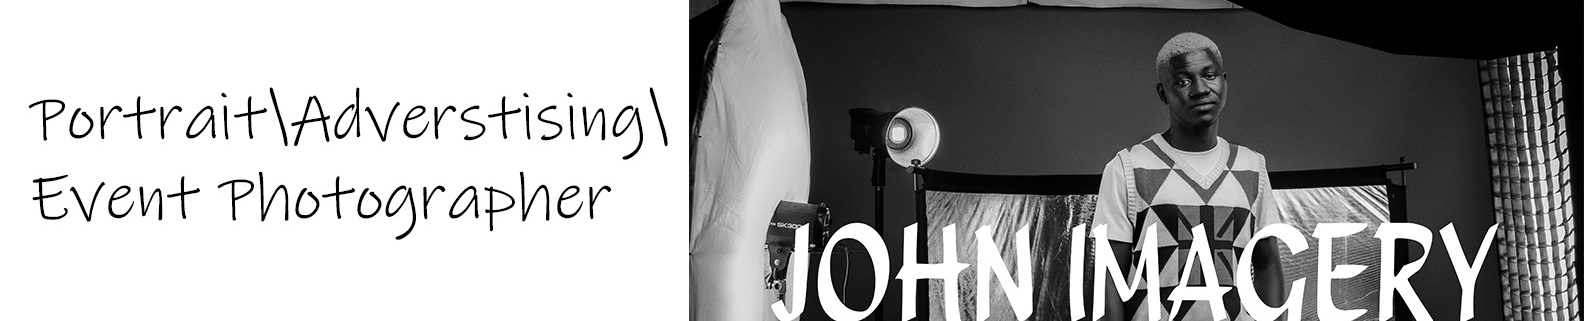 John imagery's profile banner